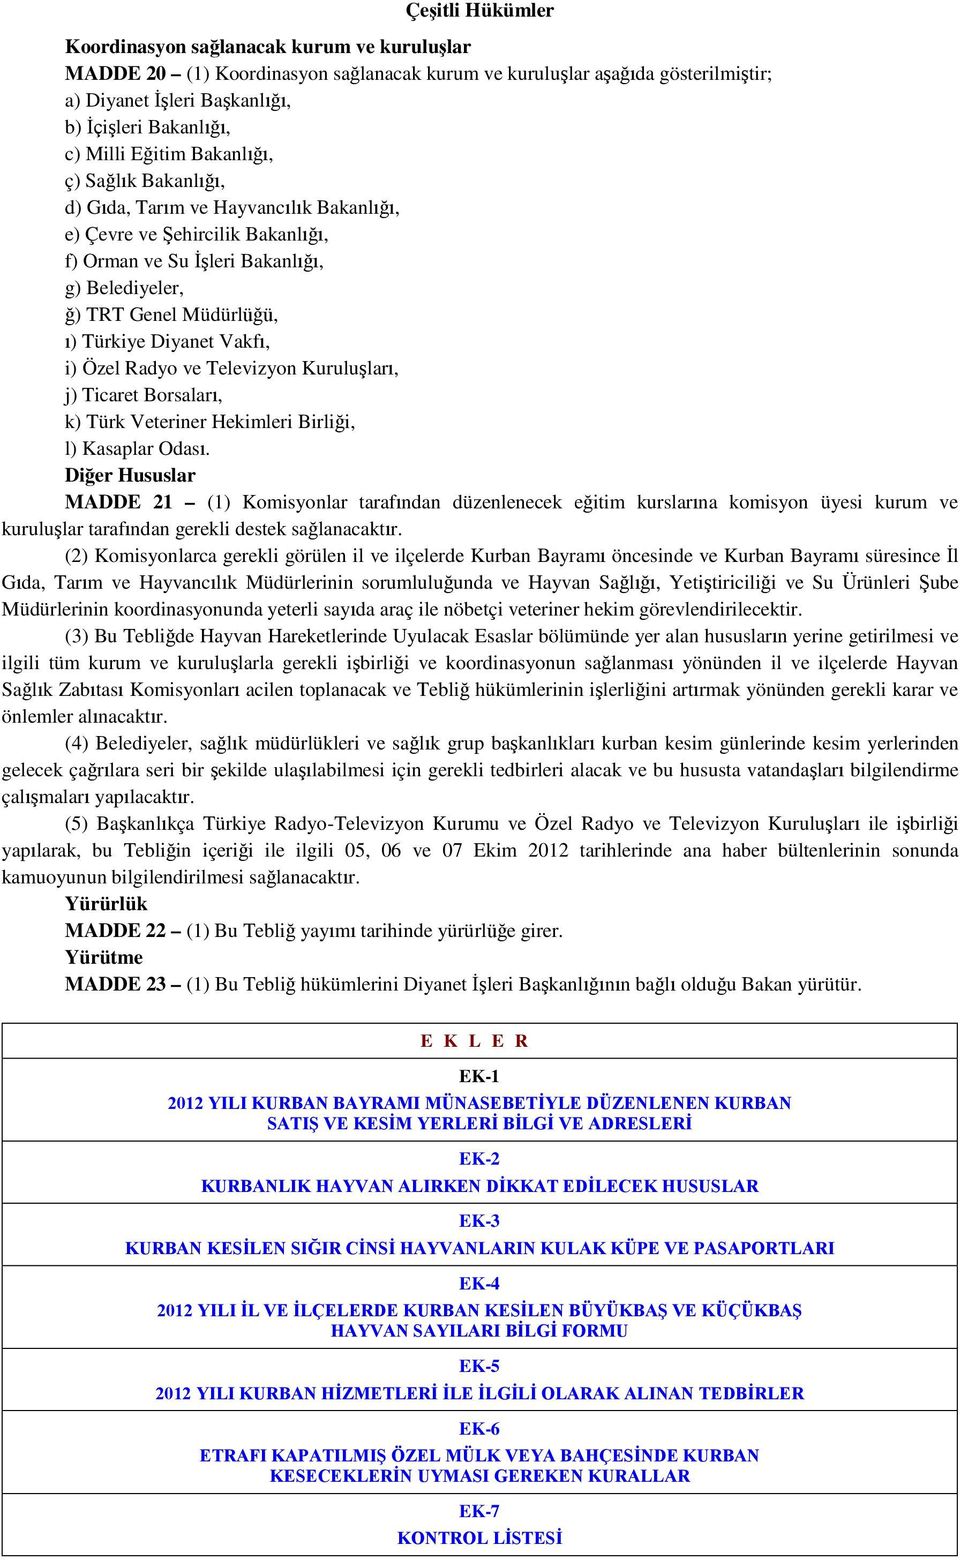 Türkiye Diyanet Vakfı, i) Özel Radyo ve Televizyon Kuruluşları, j) Ticaret Borsaları, k) Türk Veteriner Hekimleri Birliği, l) Kasaplar Odası.